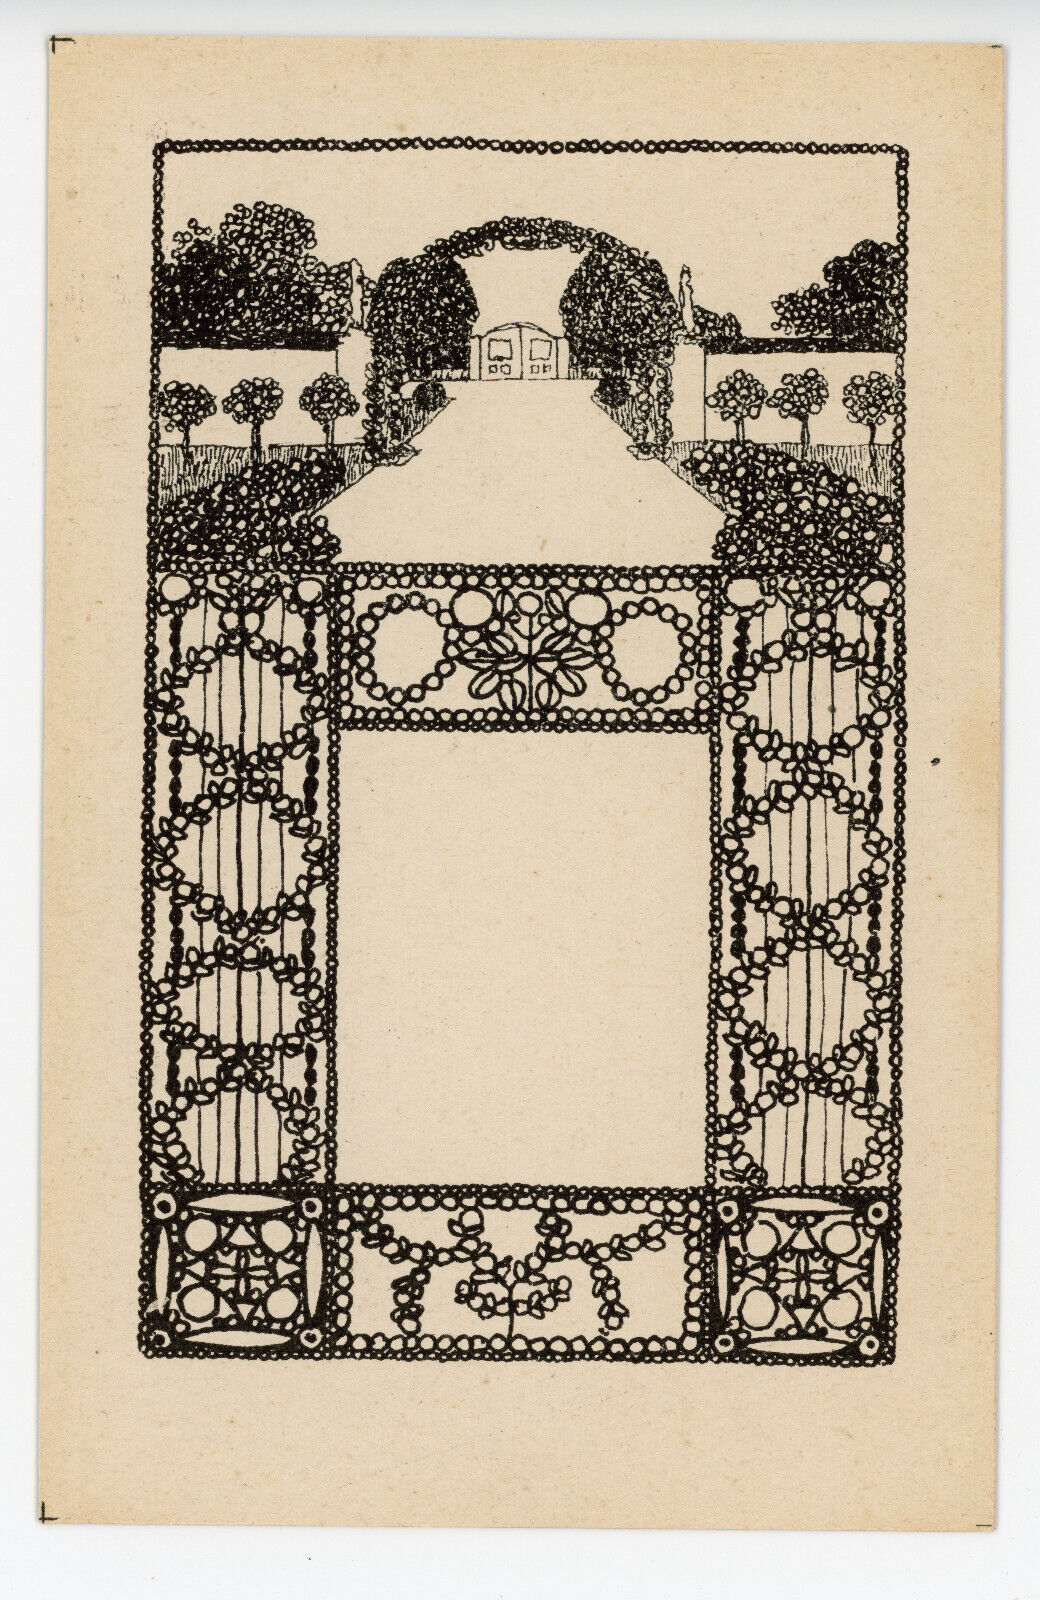 Wiener Werkstatte Postcard No. 12, Franz Lebisch?, Jewelry card with garden 1910